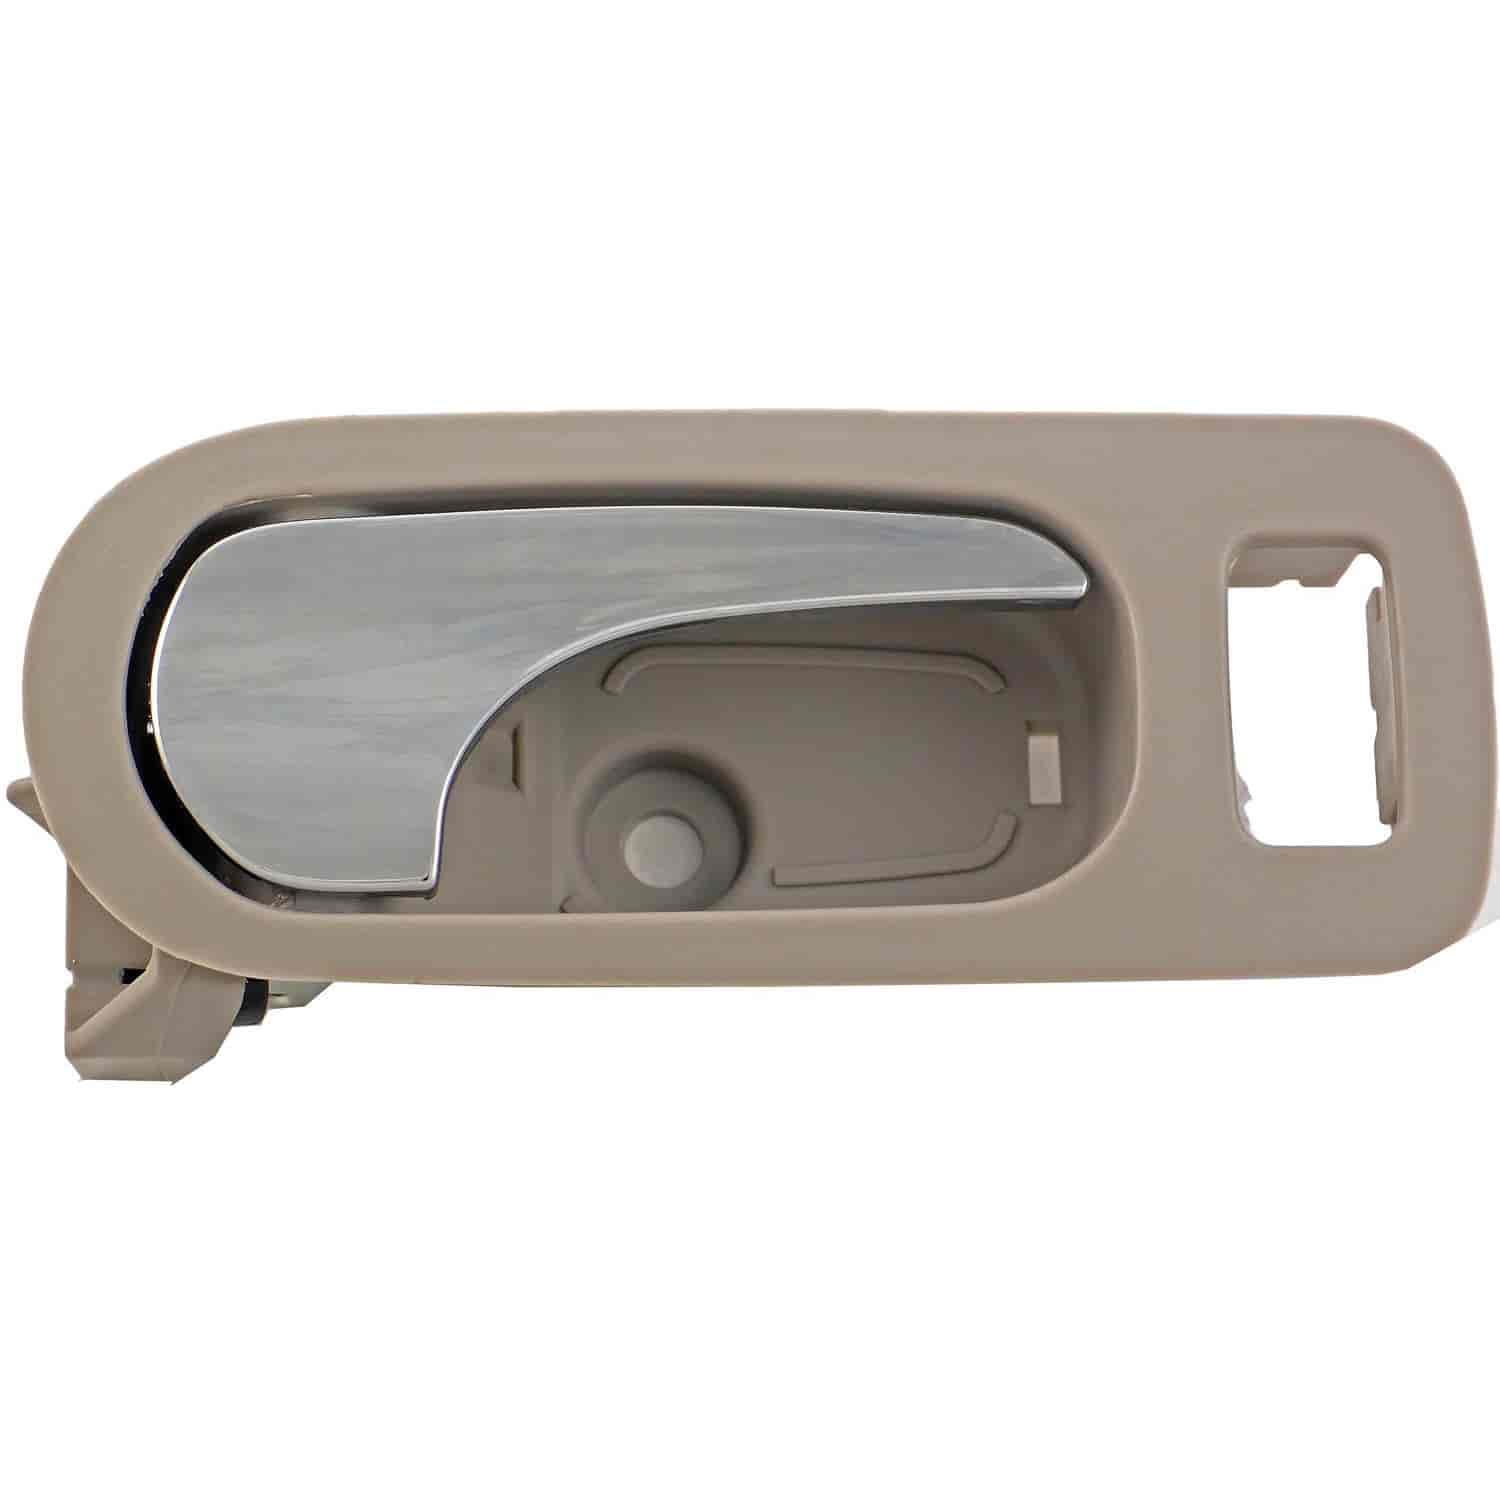 Interior Door Handle - Front Right - Chrome Lever+Light Gray Titanium